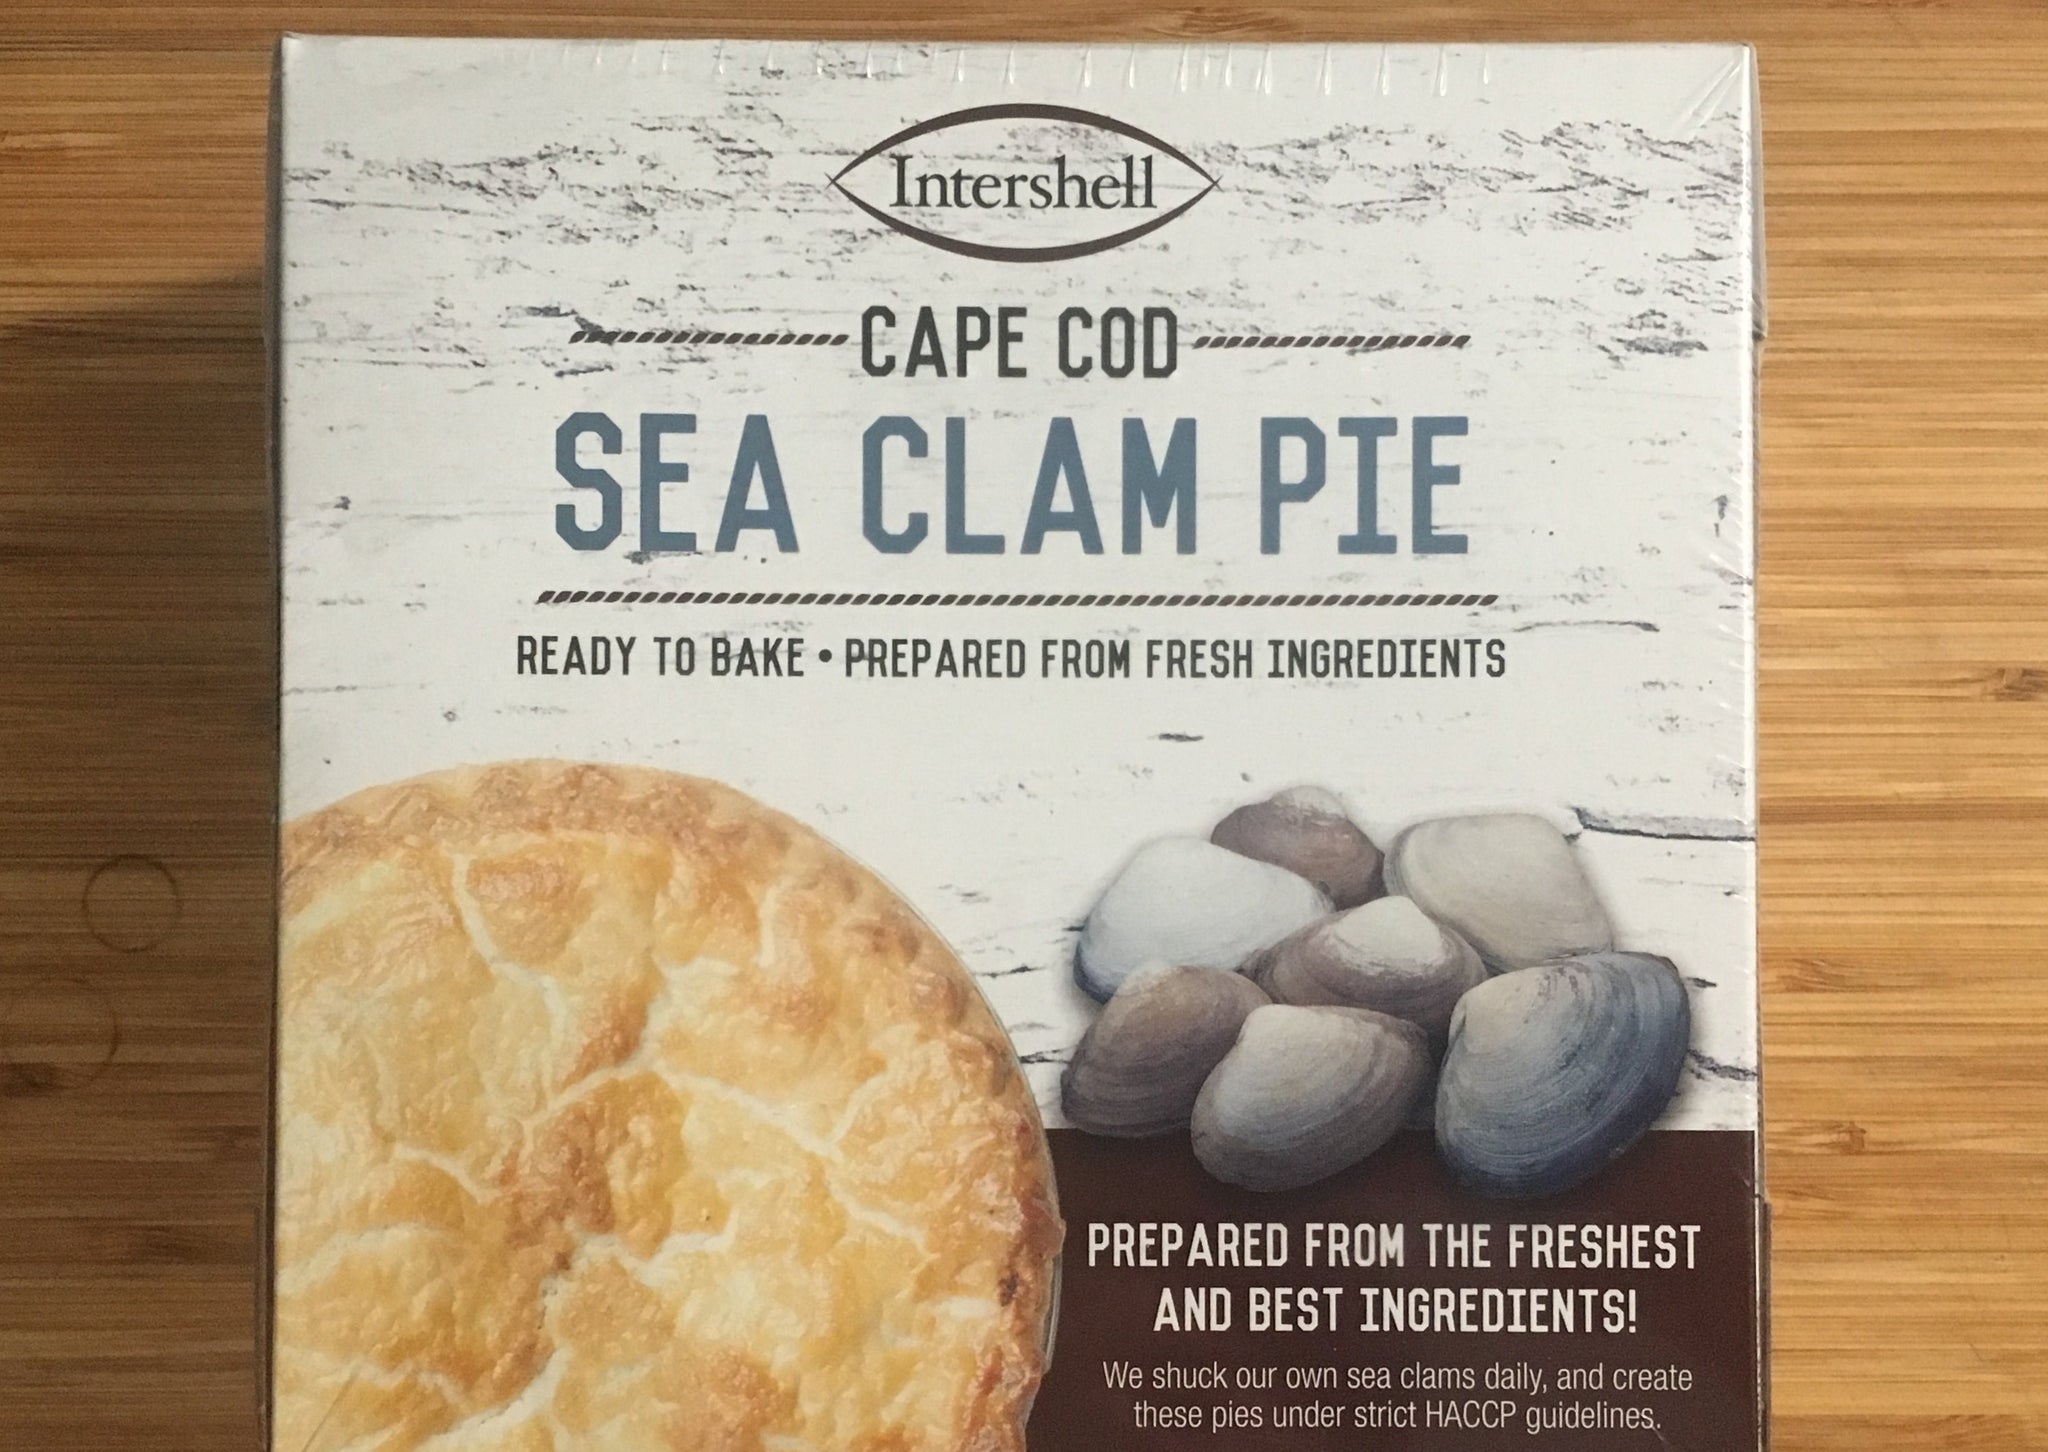 Clams - Sea Clam Pie, Frozen (Cape Cod)